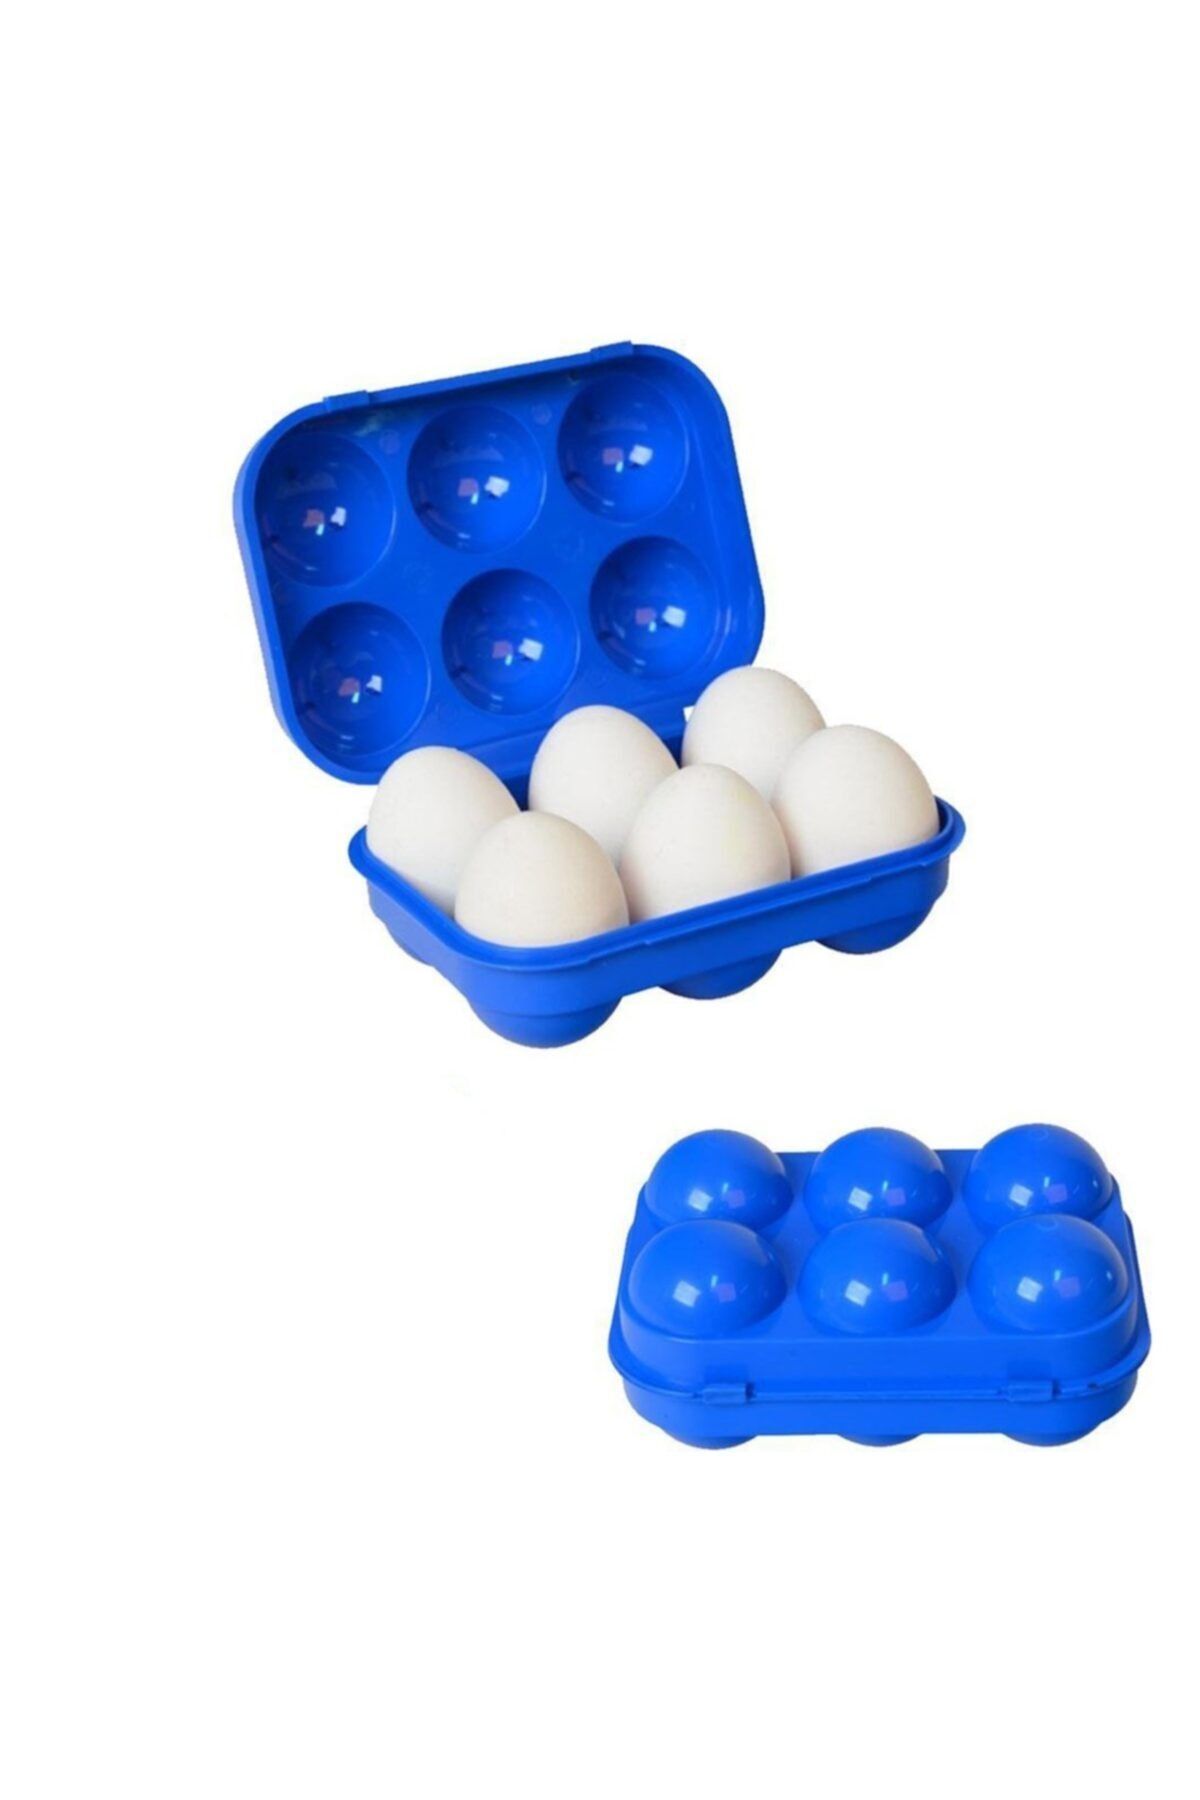 Nurgaz Mavi Yumurta Saklama Kutusu 6'lı Mavi